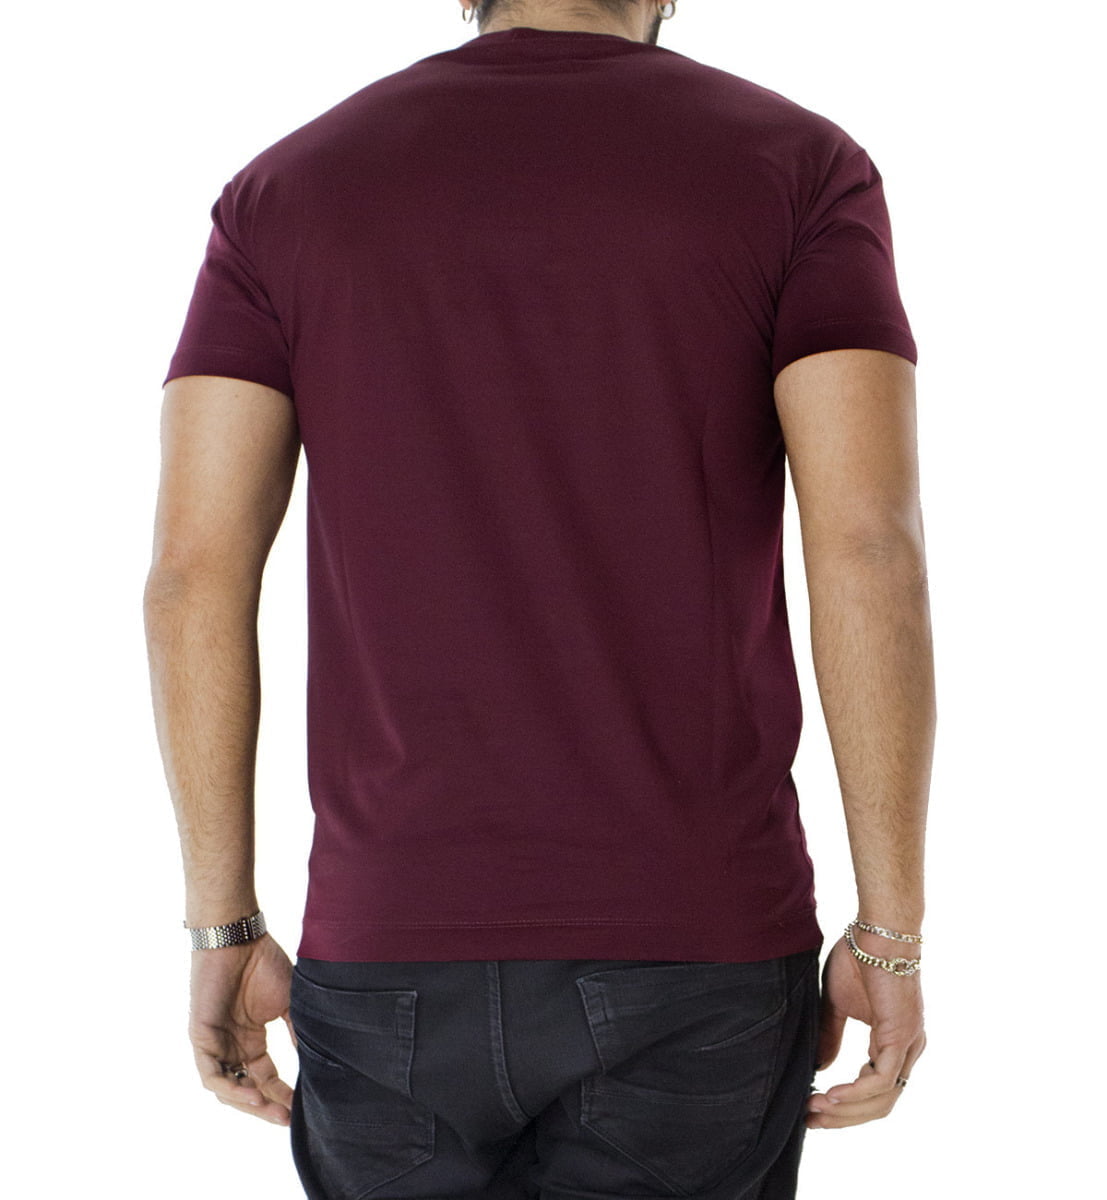 T-shirt da uomo bordeaux in cotone 100% Filo di scozia slim fit tinta unita Made In Italy